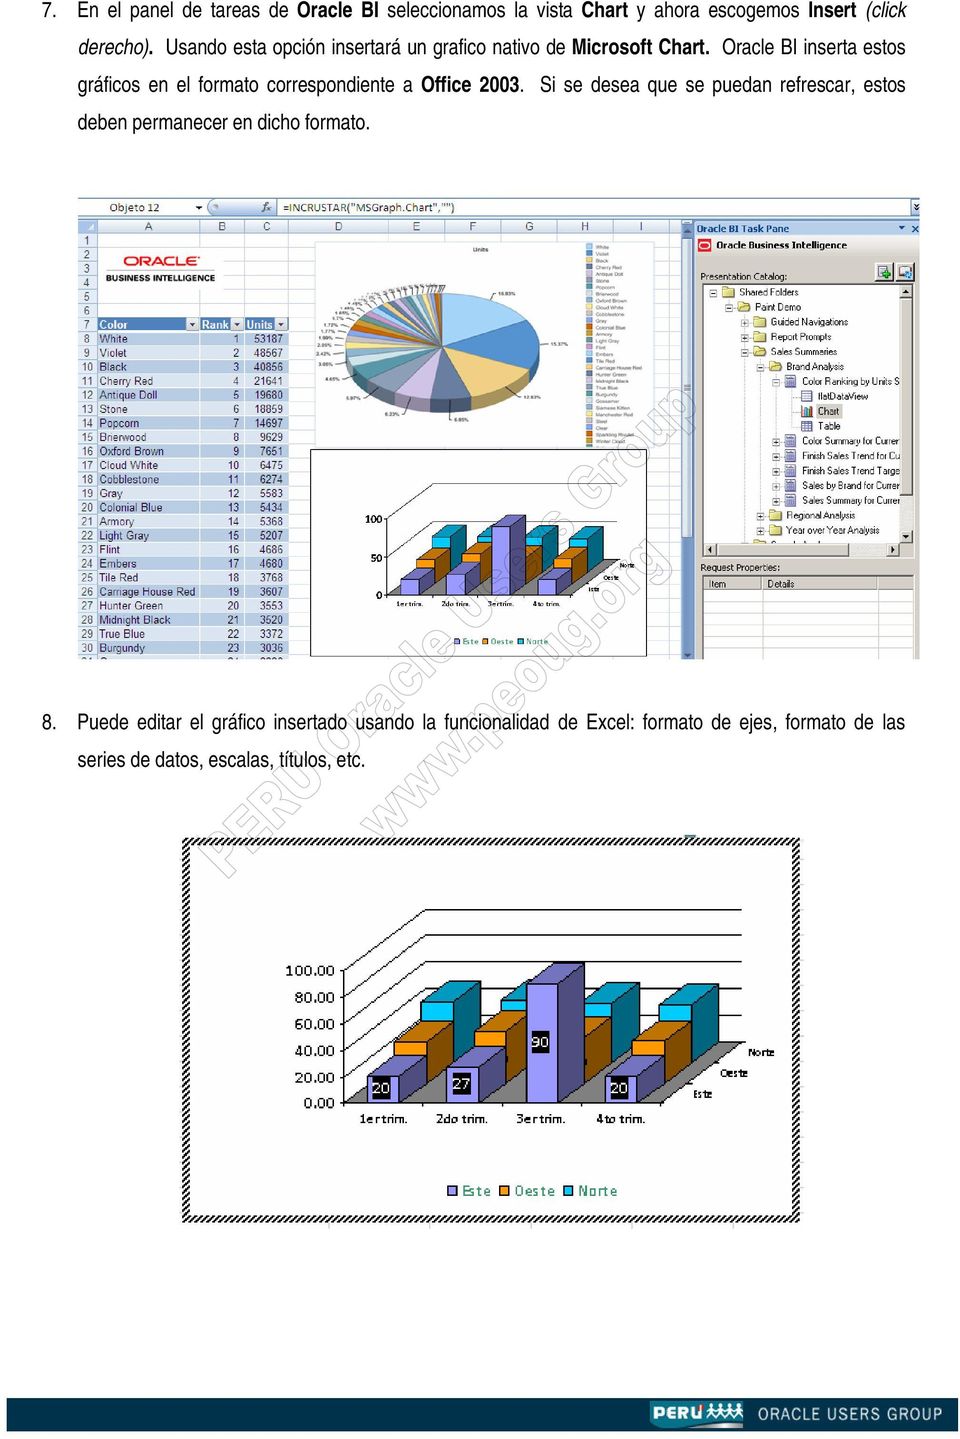 Oracle BI inserta estos gráficos en el formato correspondiente a Office 2003.